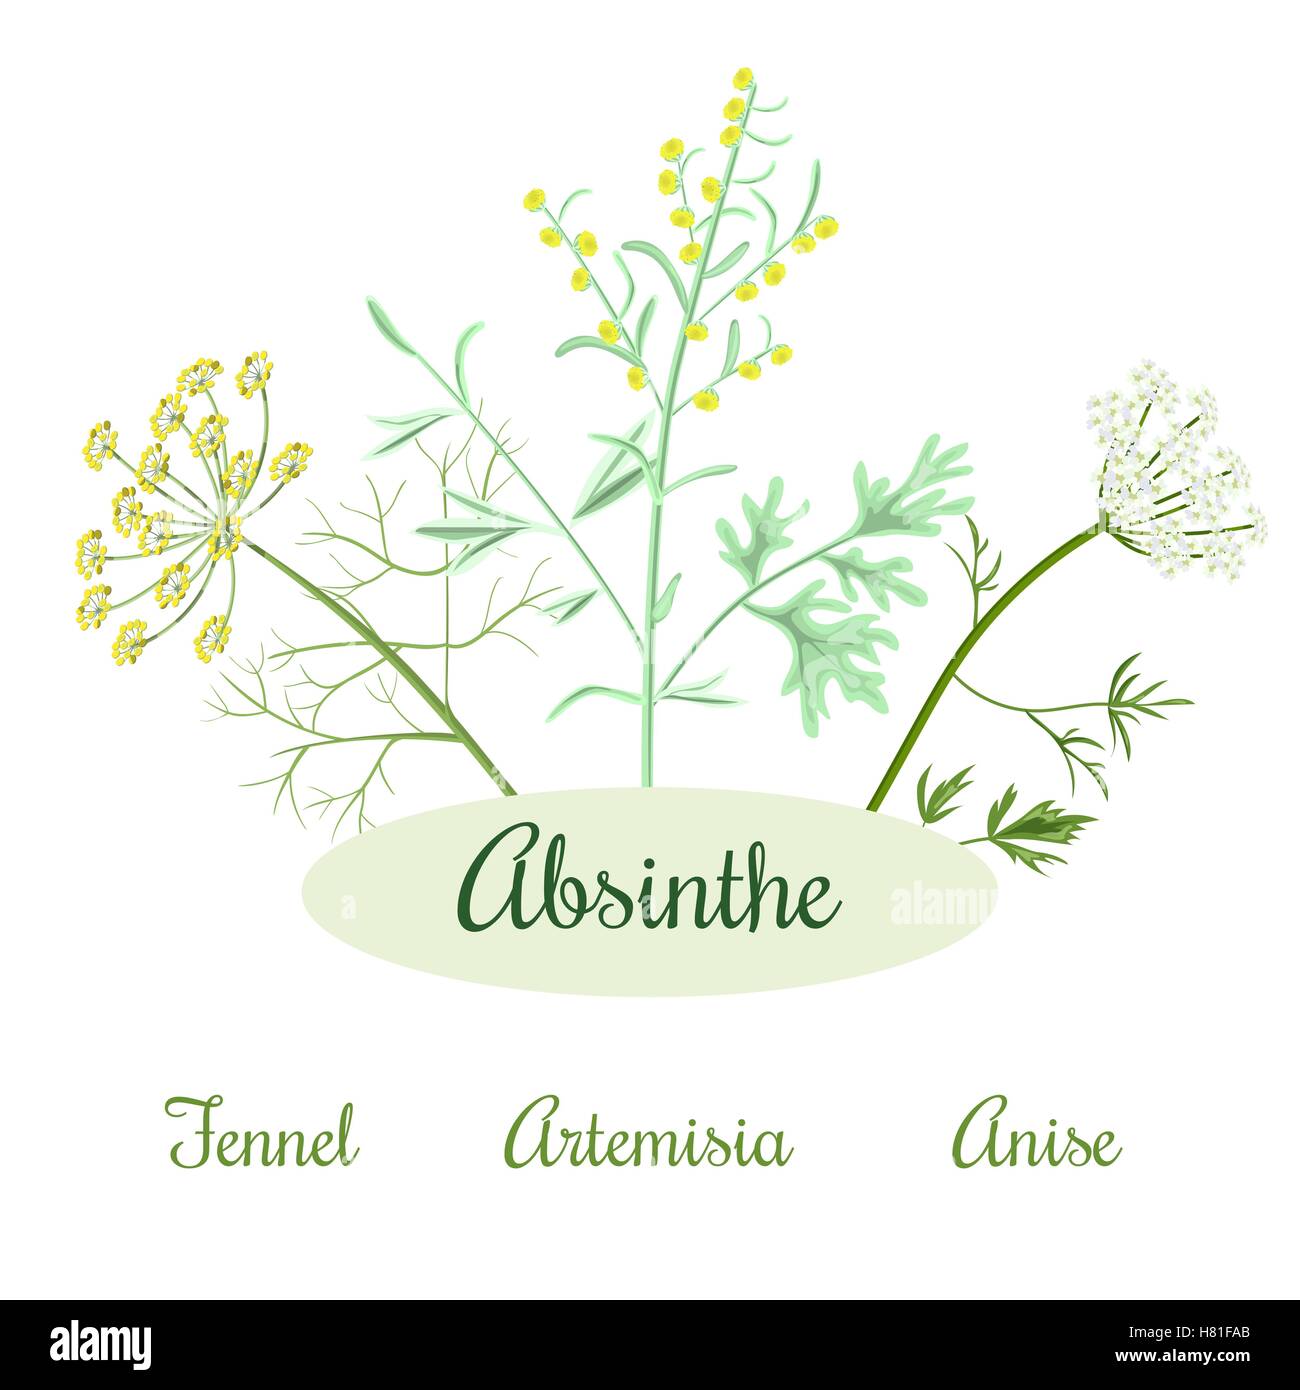 Absinth Zutaten. Großen Wermut oder Artemisia Absinthium, grüner Anis oder Pimpinella Anisum, süße Fenchel Foeniculum vulg Stock Vektor